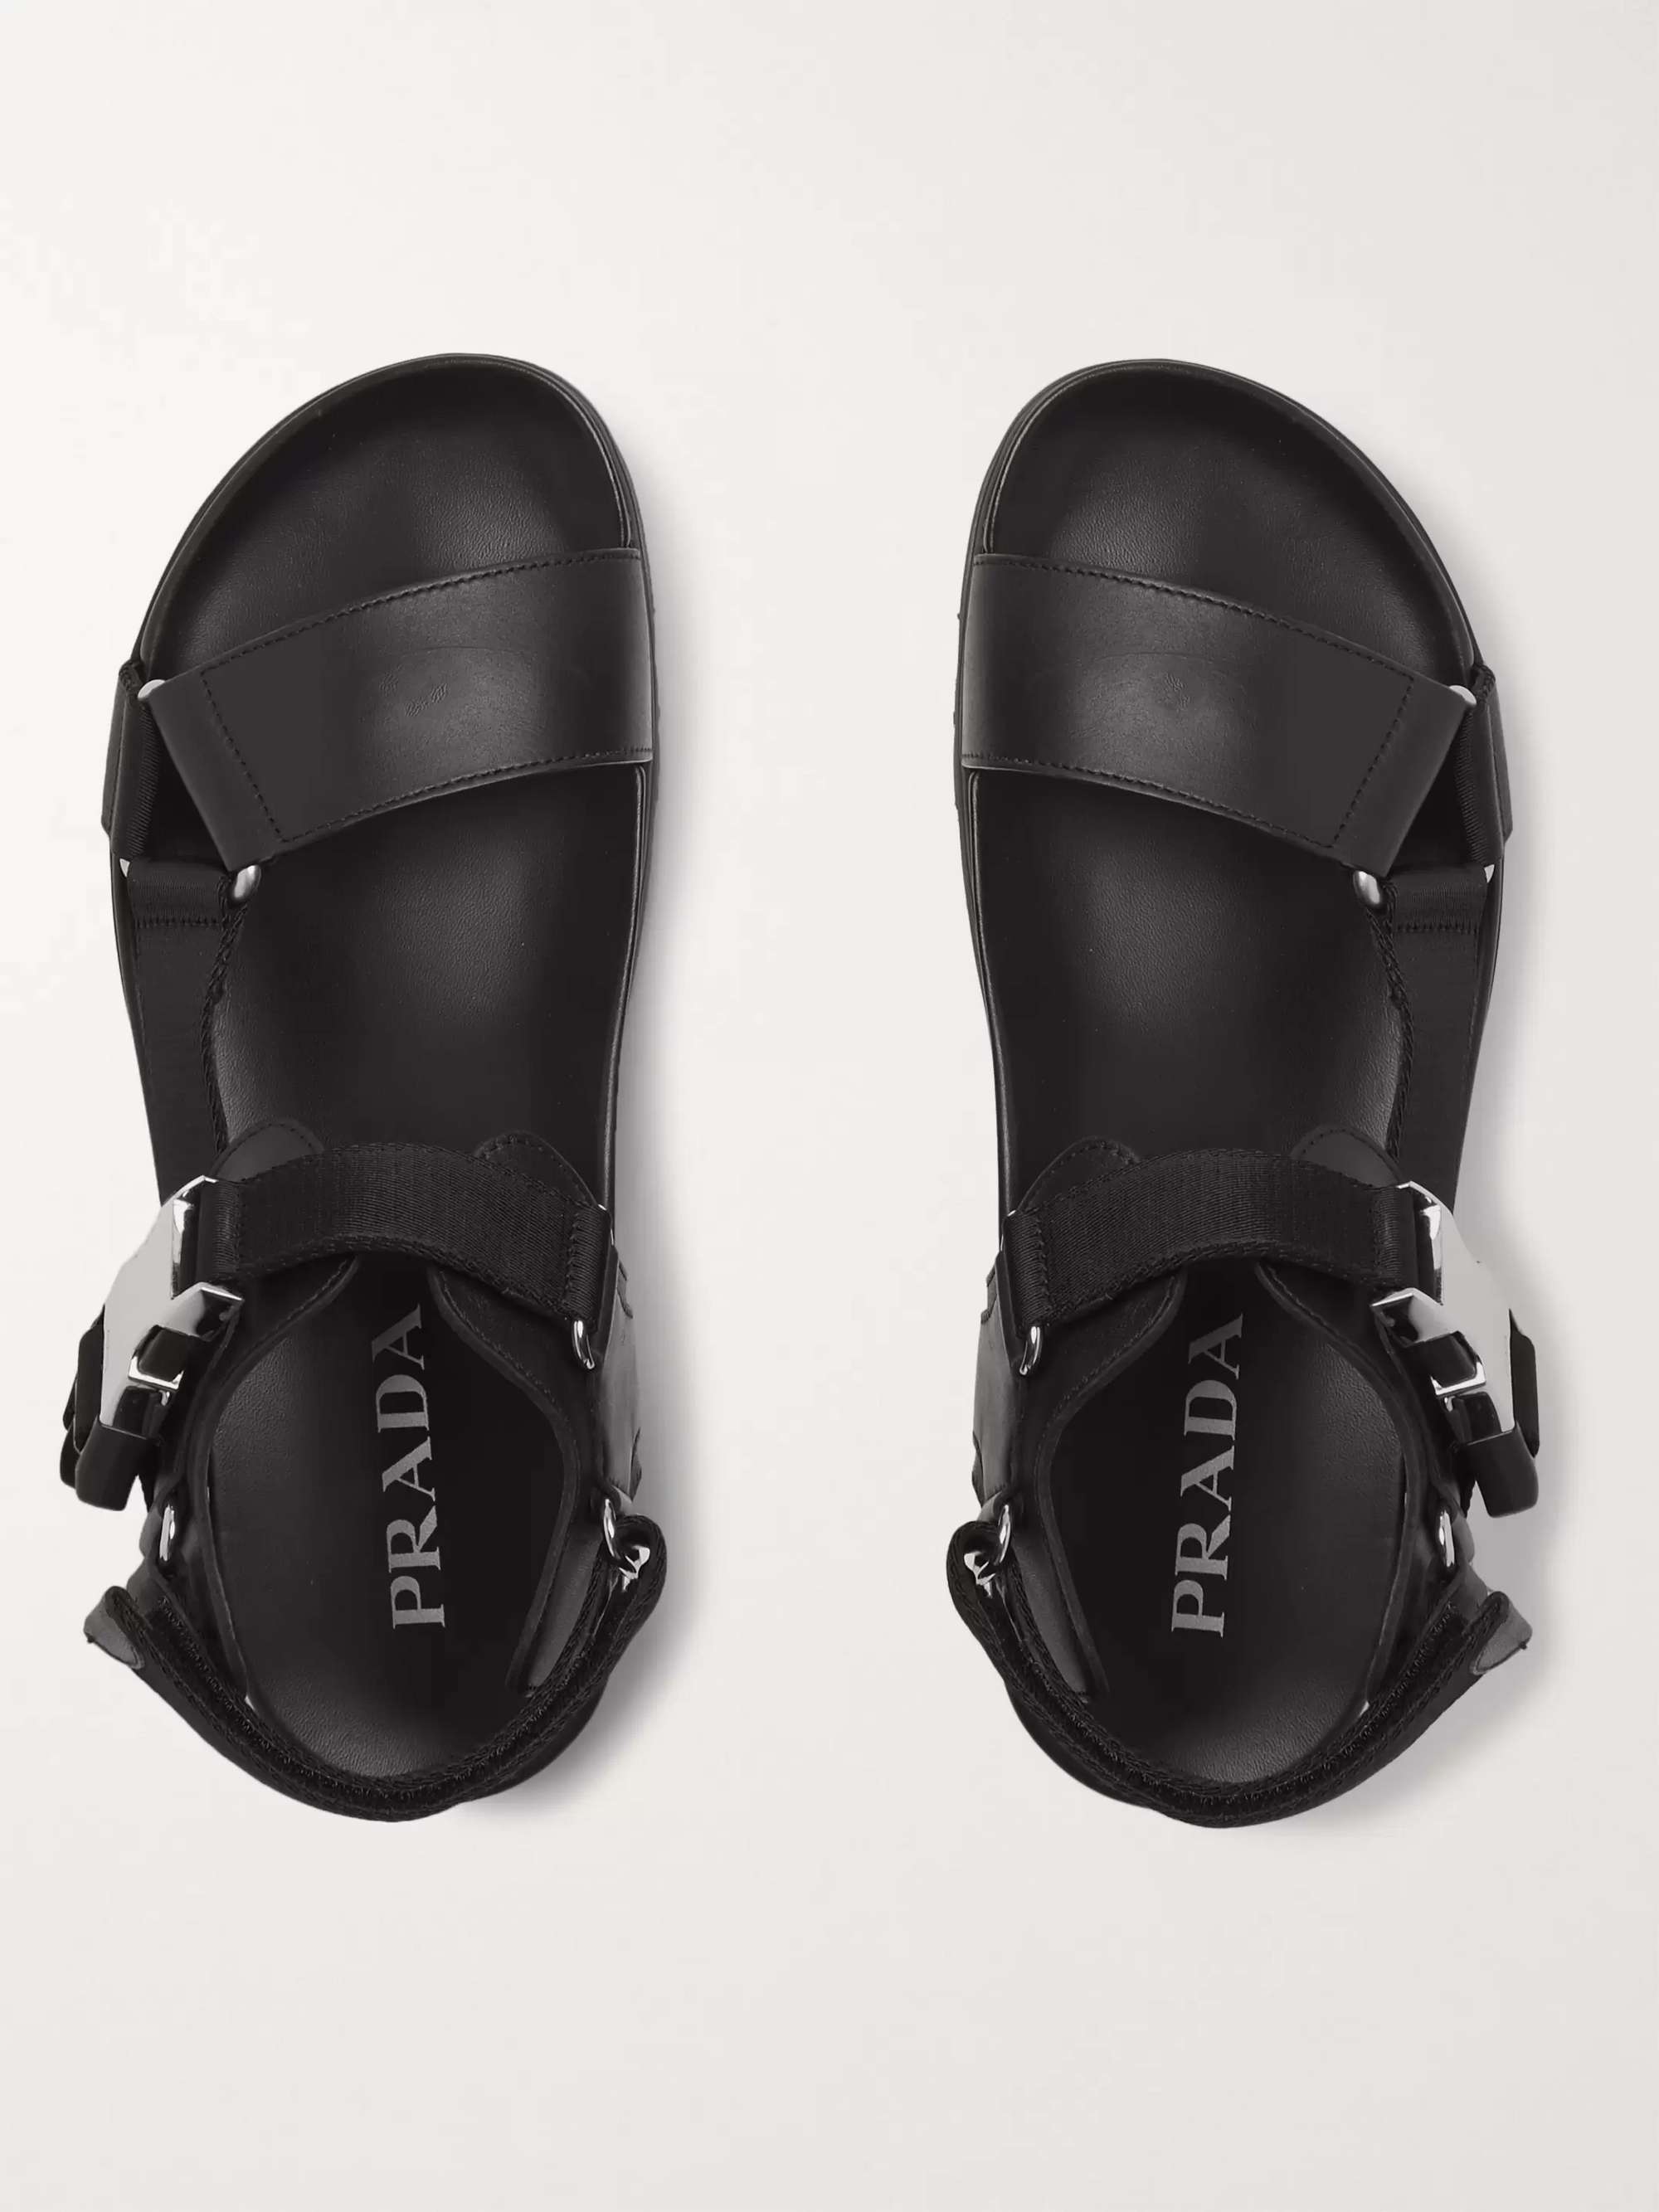 PRADA Webbing-Trimmed Leather Sandals